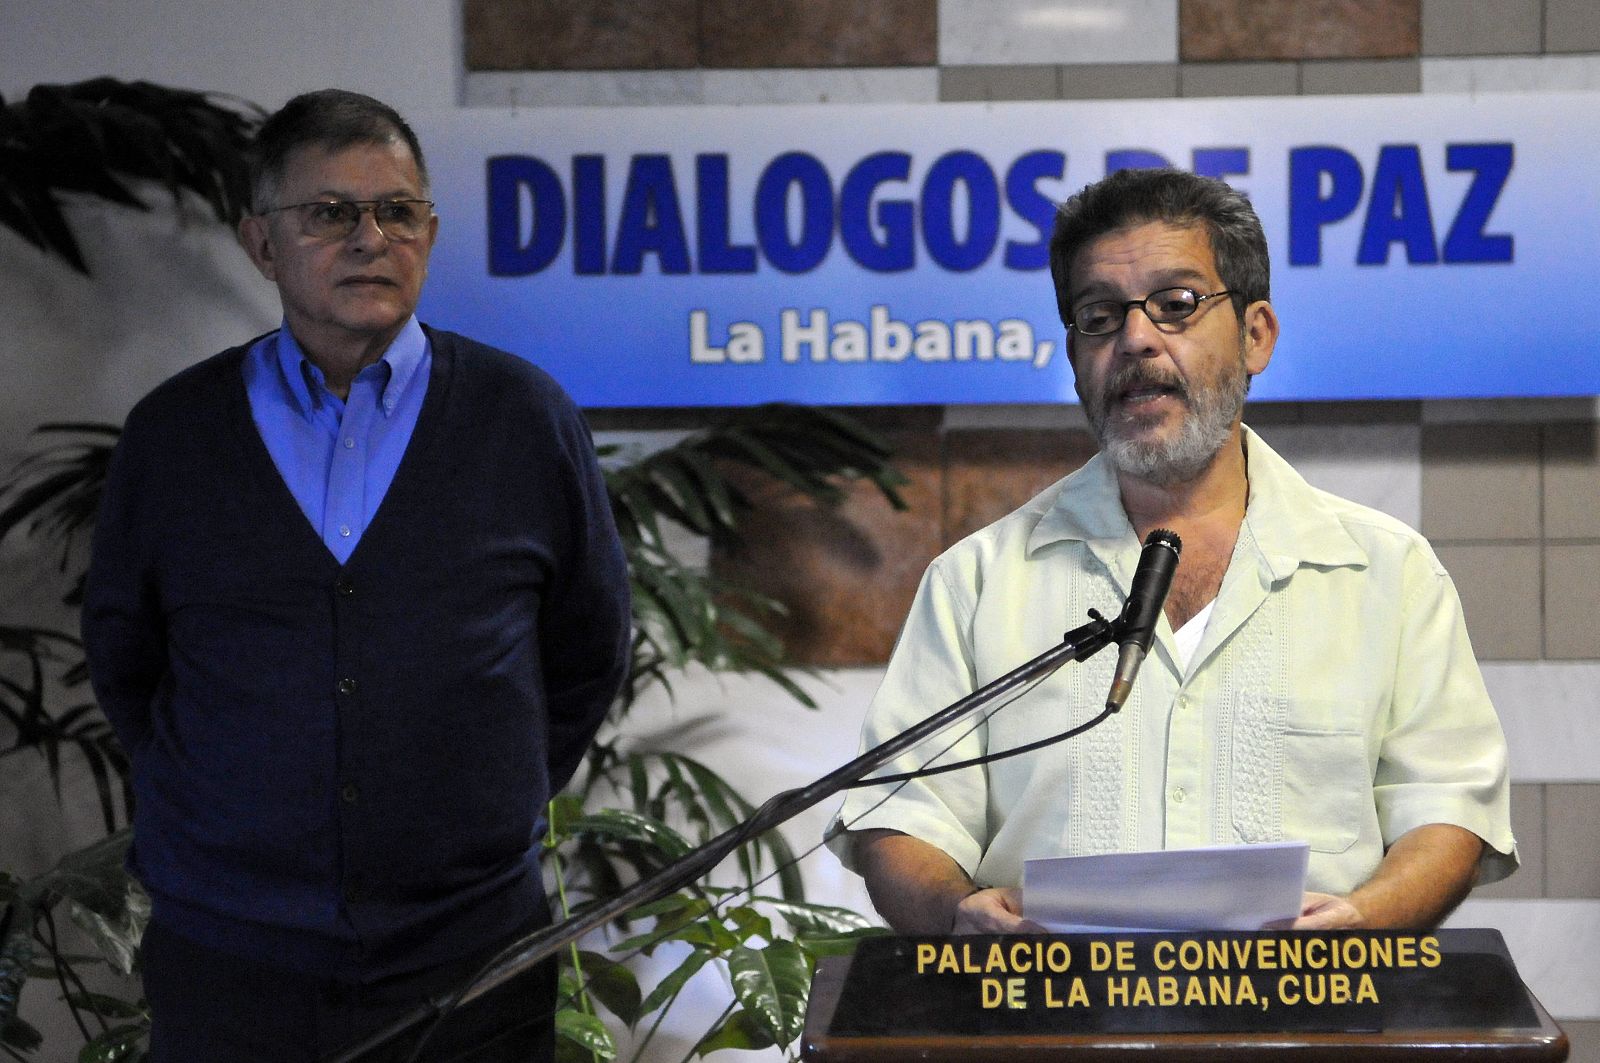 El miembro del equipo negociador de las FARC Luis Alberto Albán (d), acompañado de Rodrigo Granda (i), lee un comunicado previo a una nueva jornada de diálogos de paz.